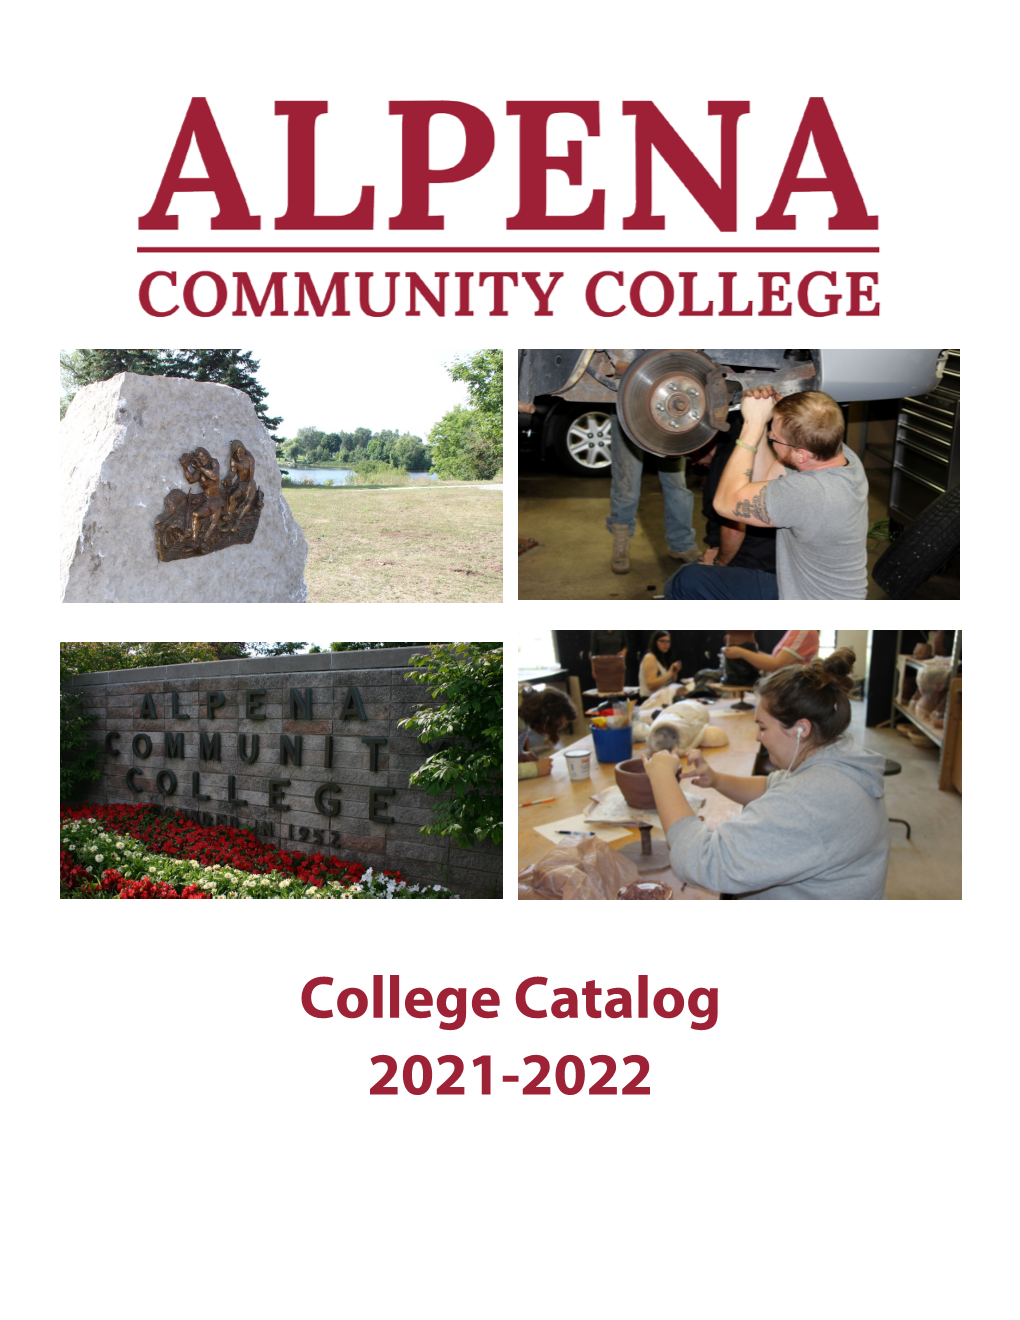 College Catalog 2021-2022